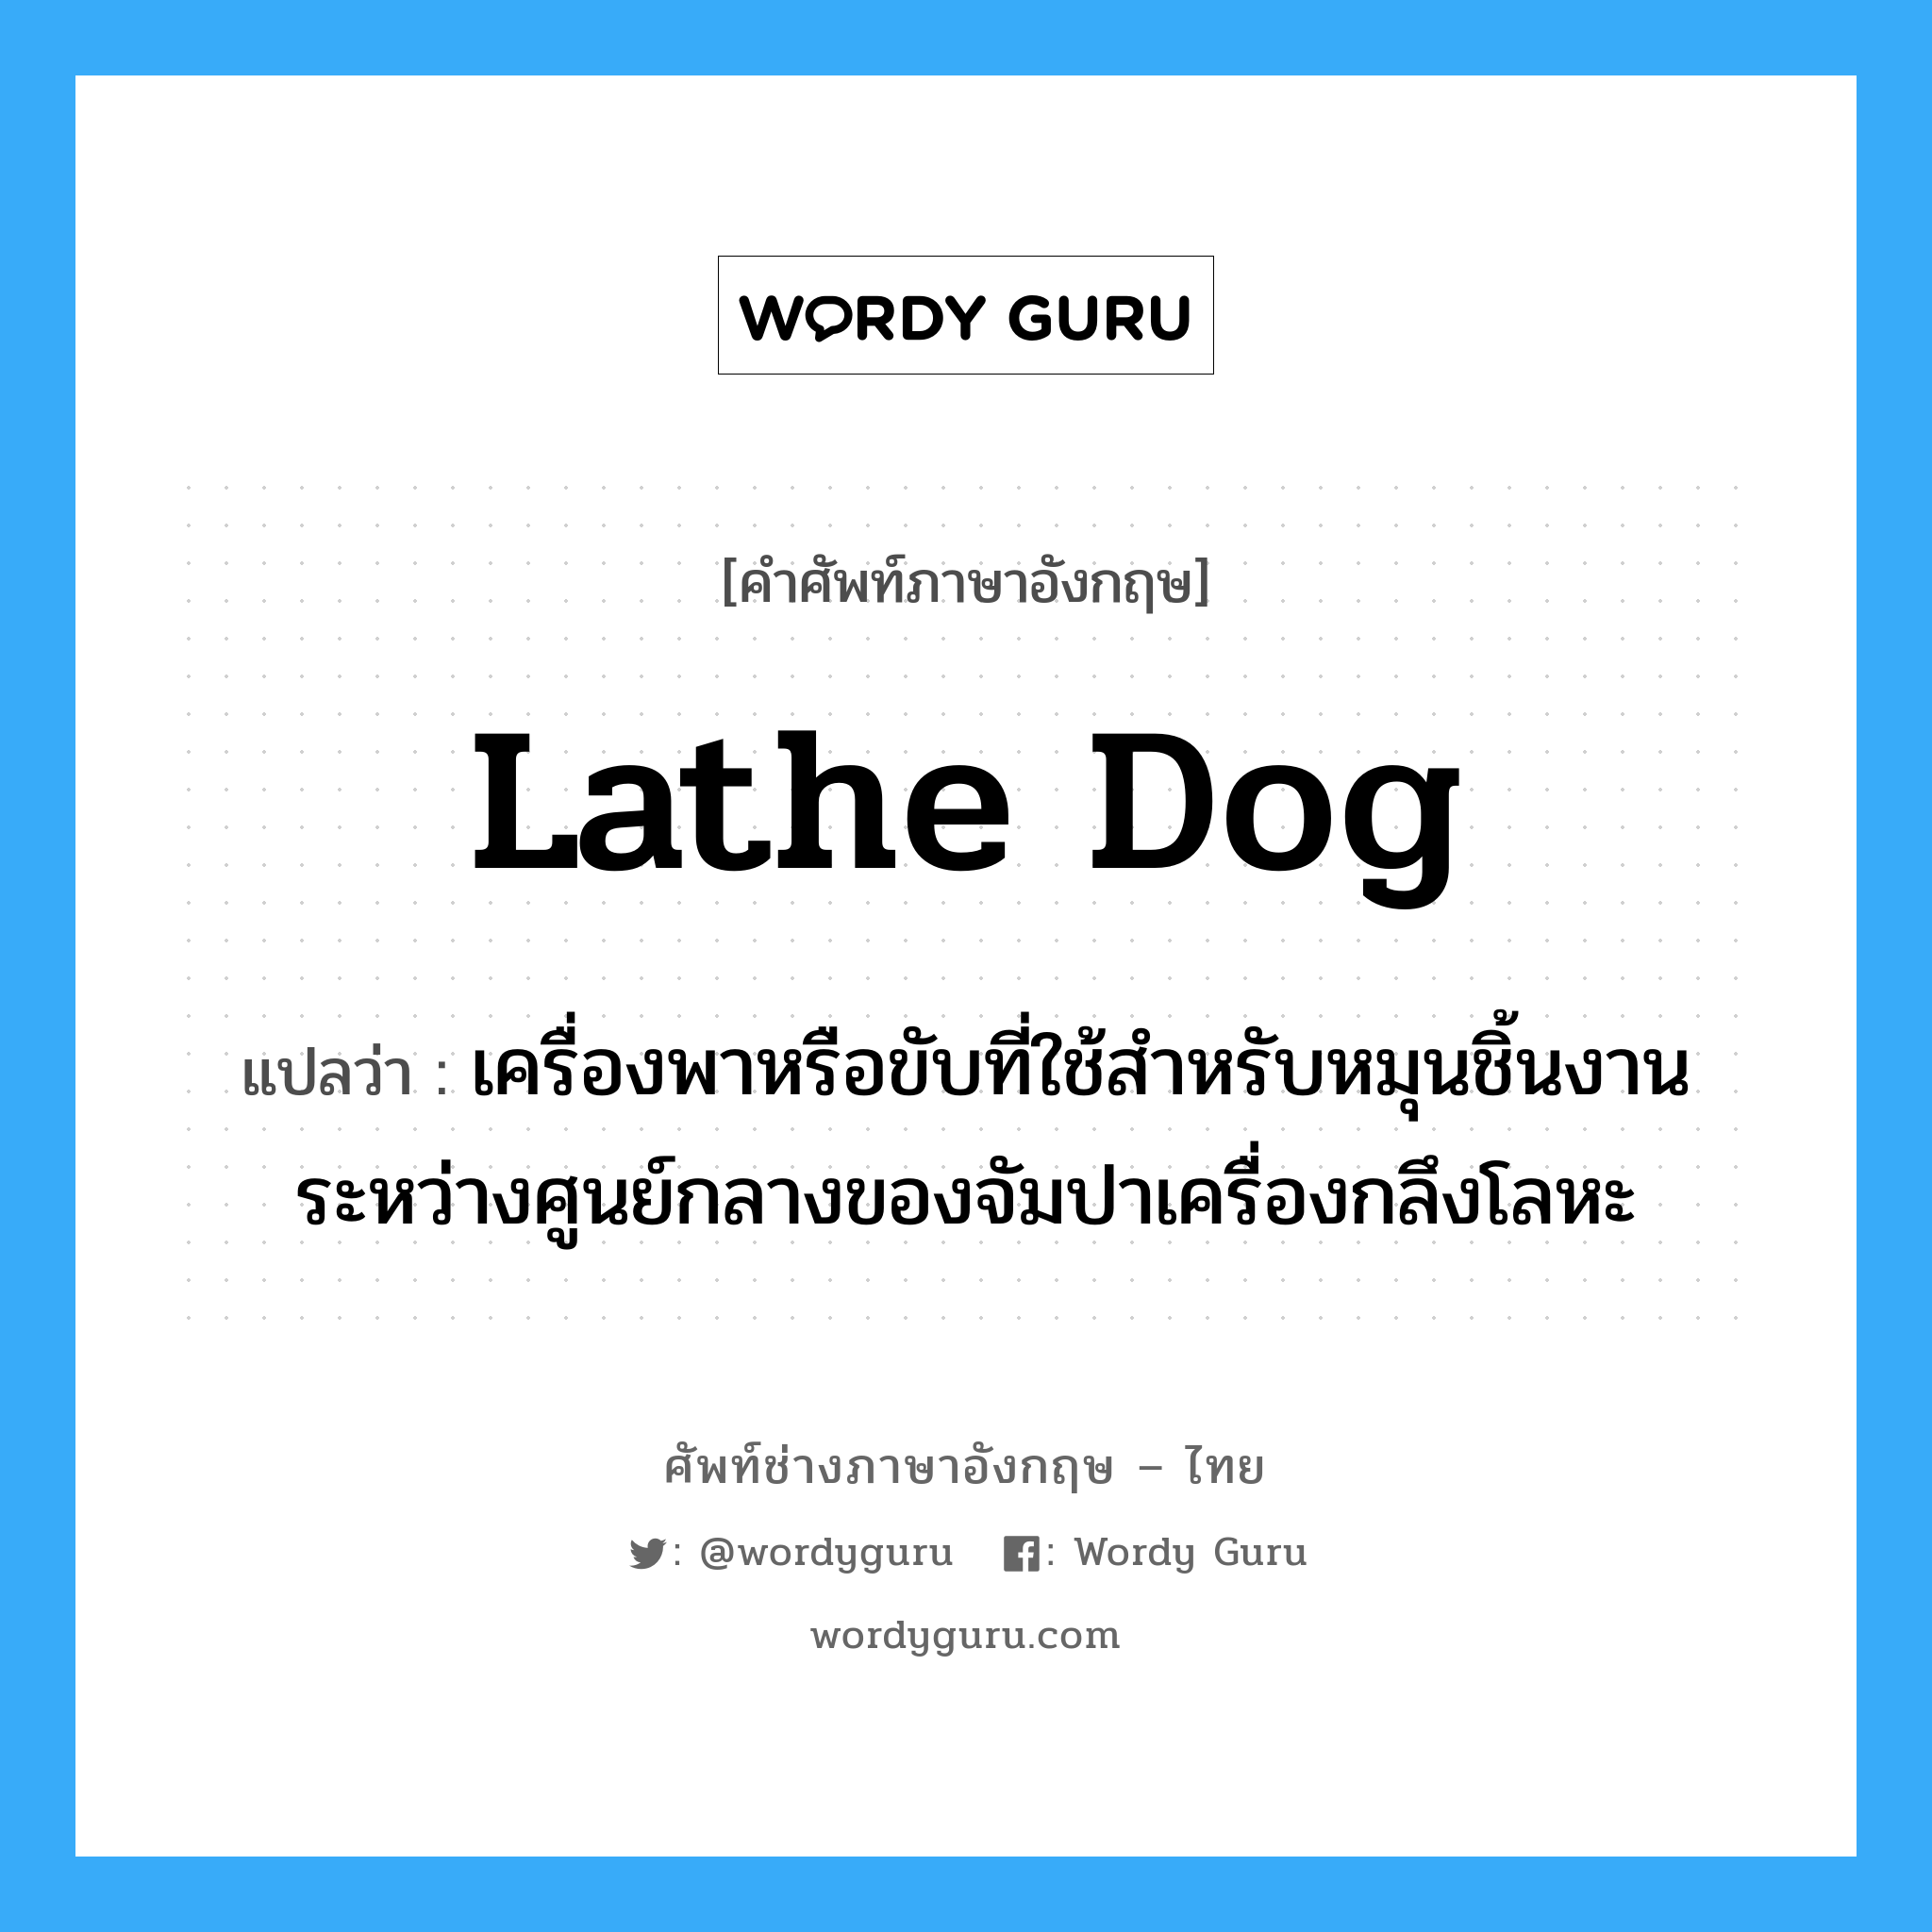 lathe dog แปลว่า?, คำศัพท์ช่างภาษาอังกฤษ - ไทย lathe dog คำศัพท์ภาษาอังกฤษ lathe dog แปลว่า เครื่องพาหรือขับที่ใช้สำหรับหมุนชิ้นงานระหว่างศูนย์กลางของจัมปาเครื่องกลึงโลหะ